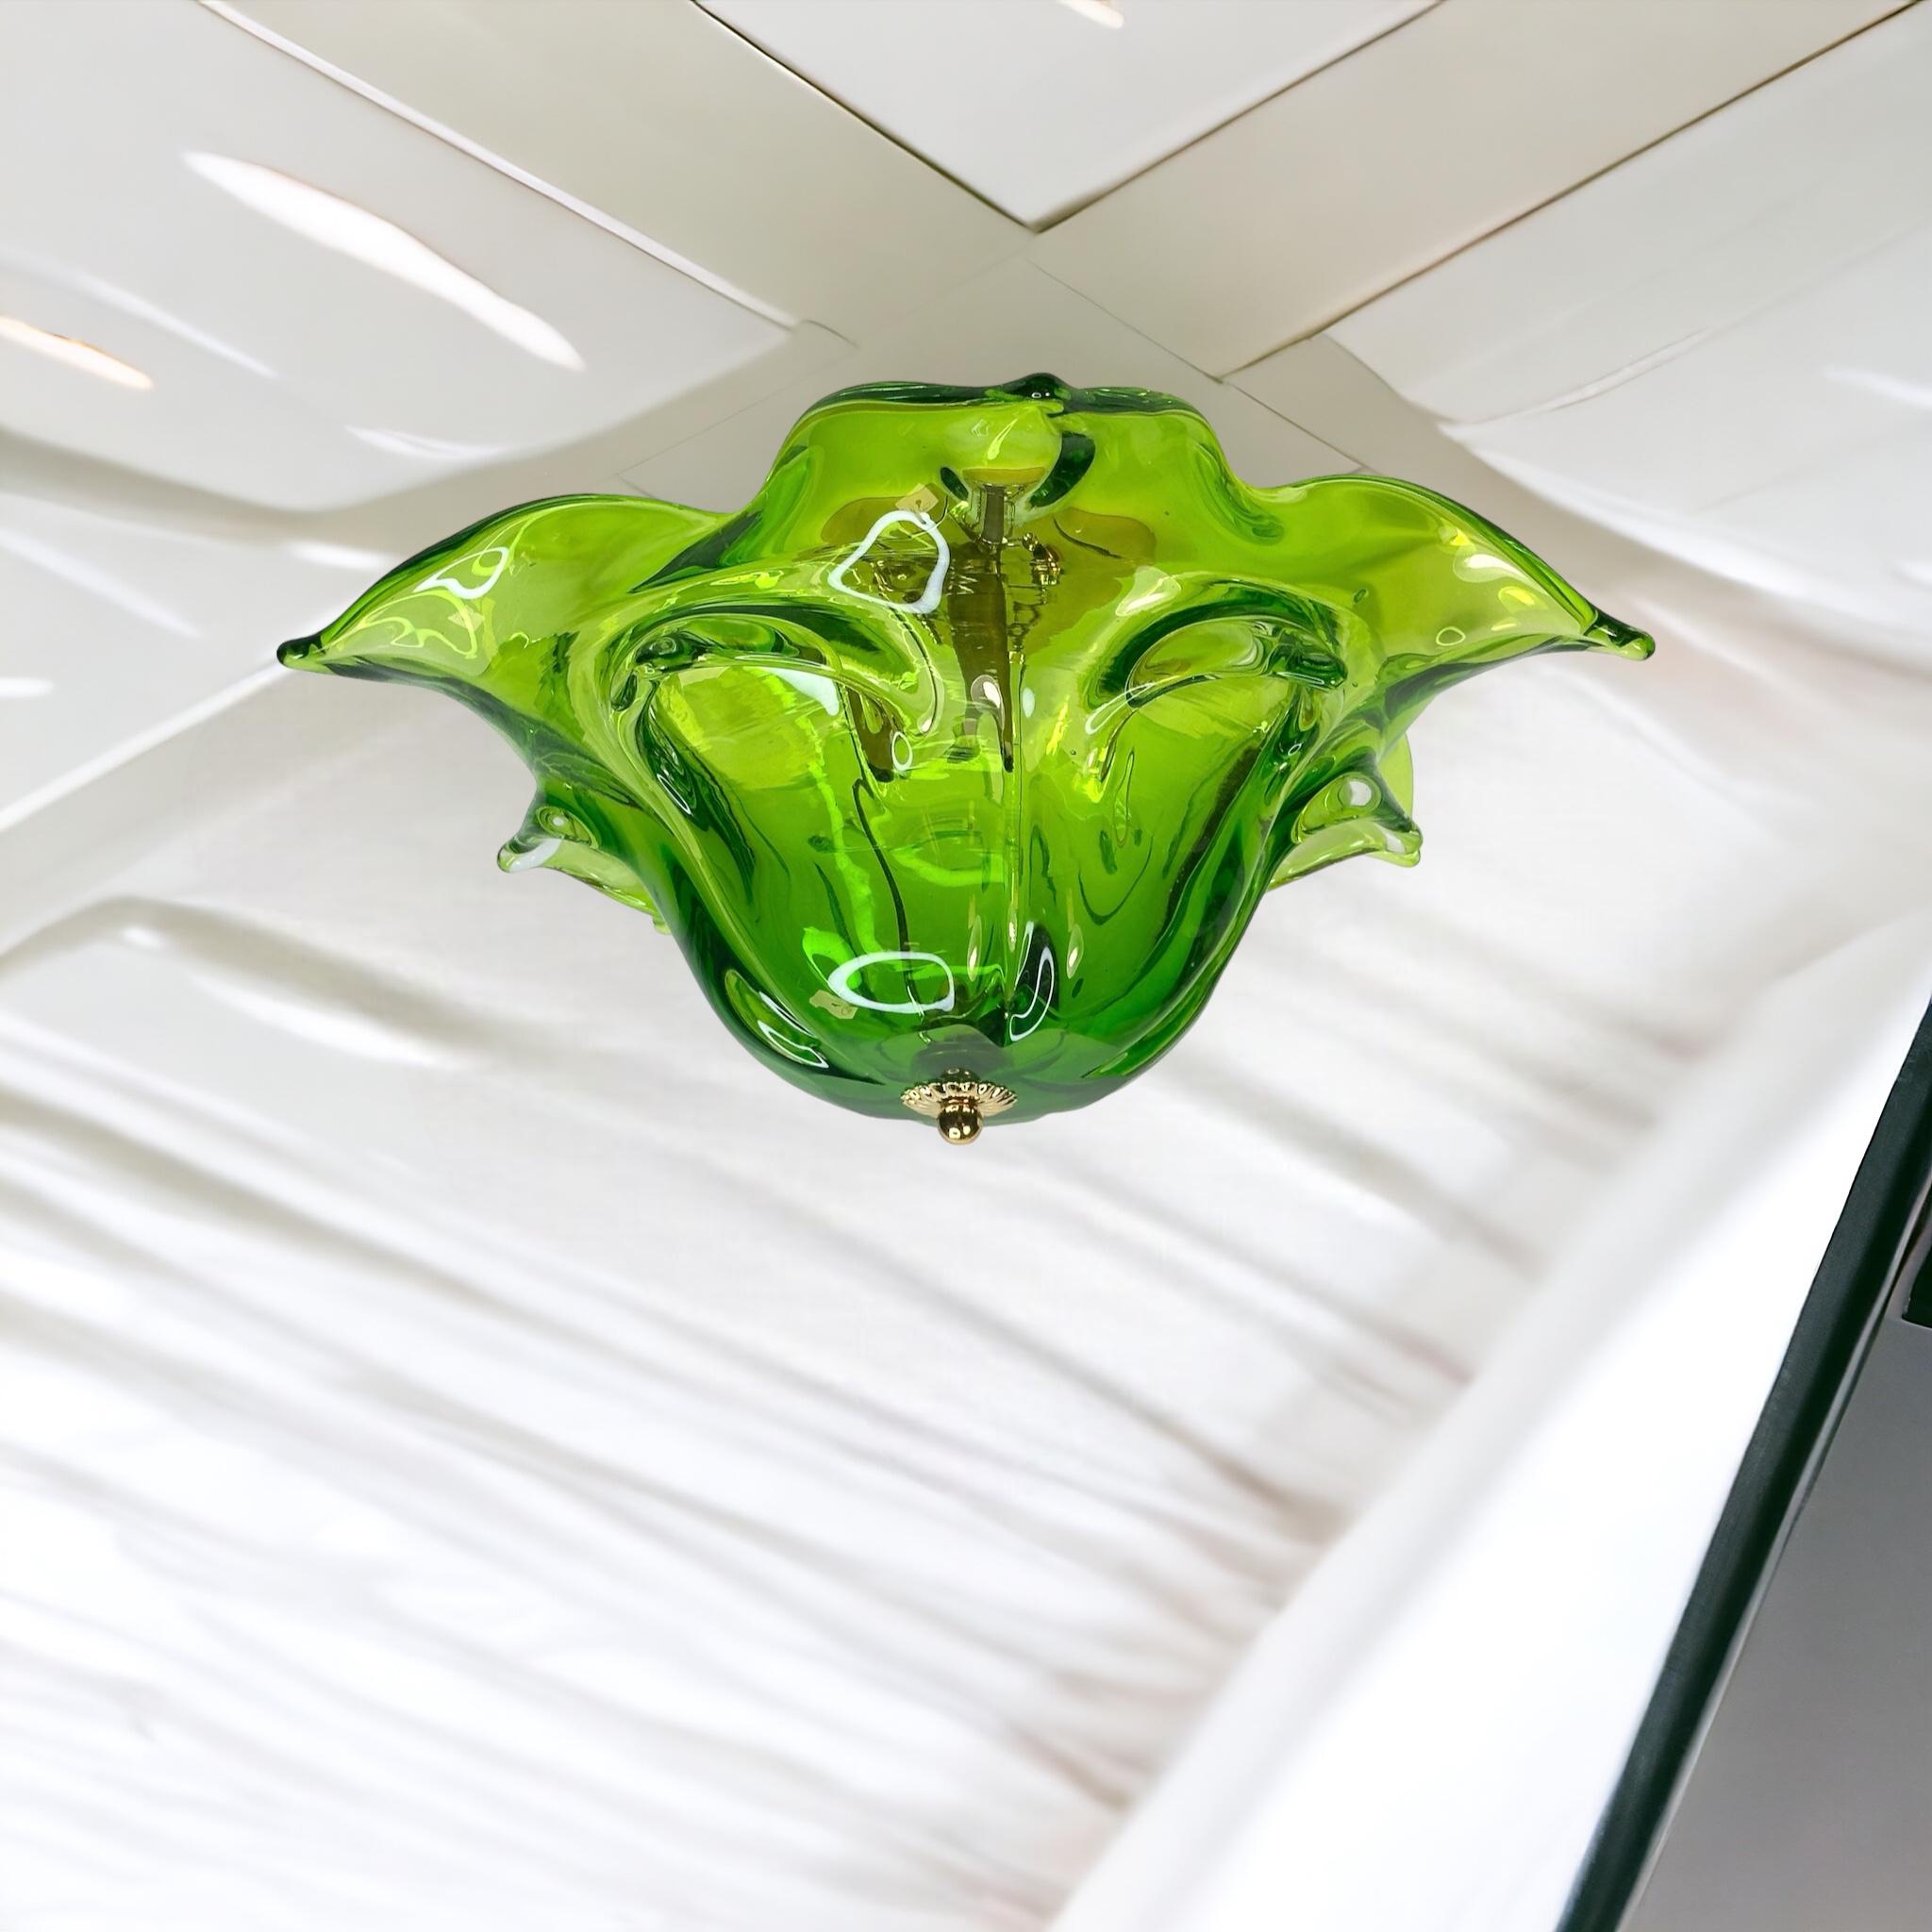 Une magnifique monture encastrée futuriste en verre, réalisée par une entreprise de verre de Murano. Verre d'art soufflé à la bouche dans une technique organique. Le luminaire nécessite une ampoule européenne E14 / 110 Volt Candelabra, ampoule